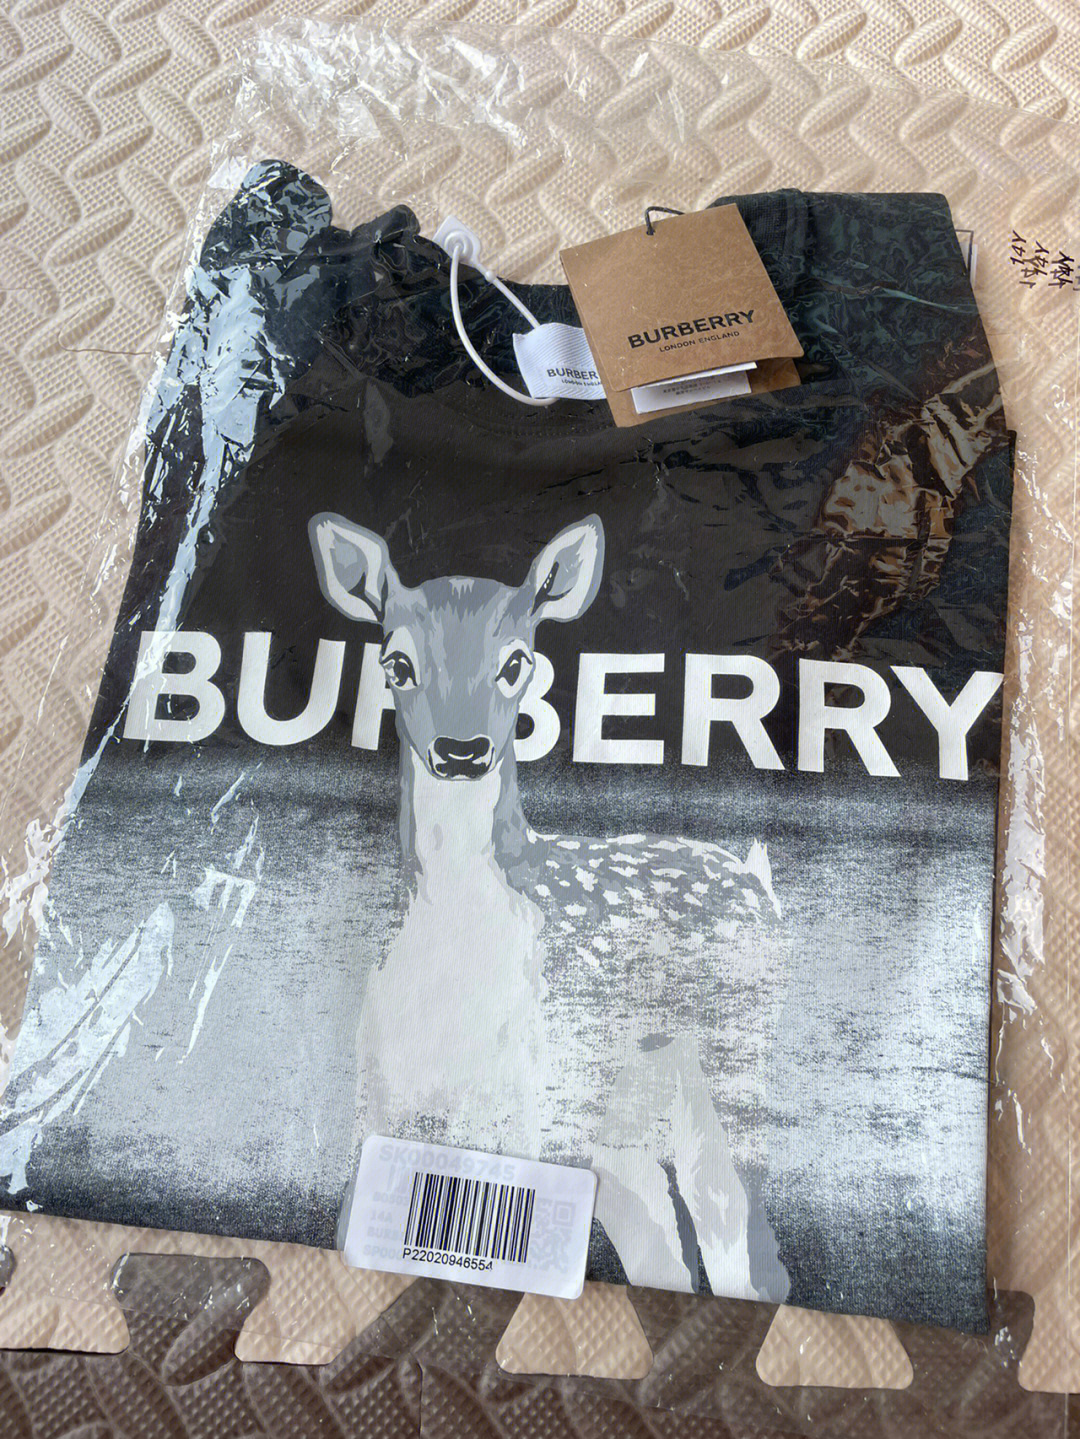 burberry小鹿t恤真假图片